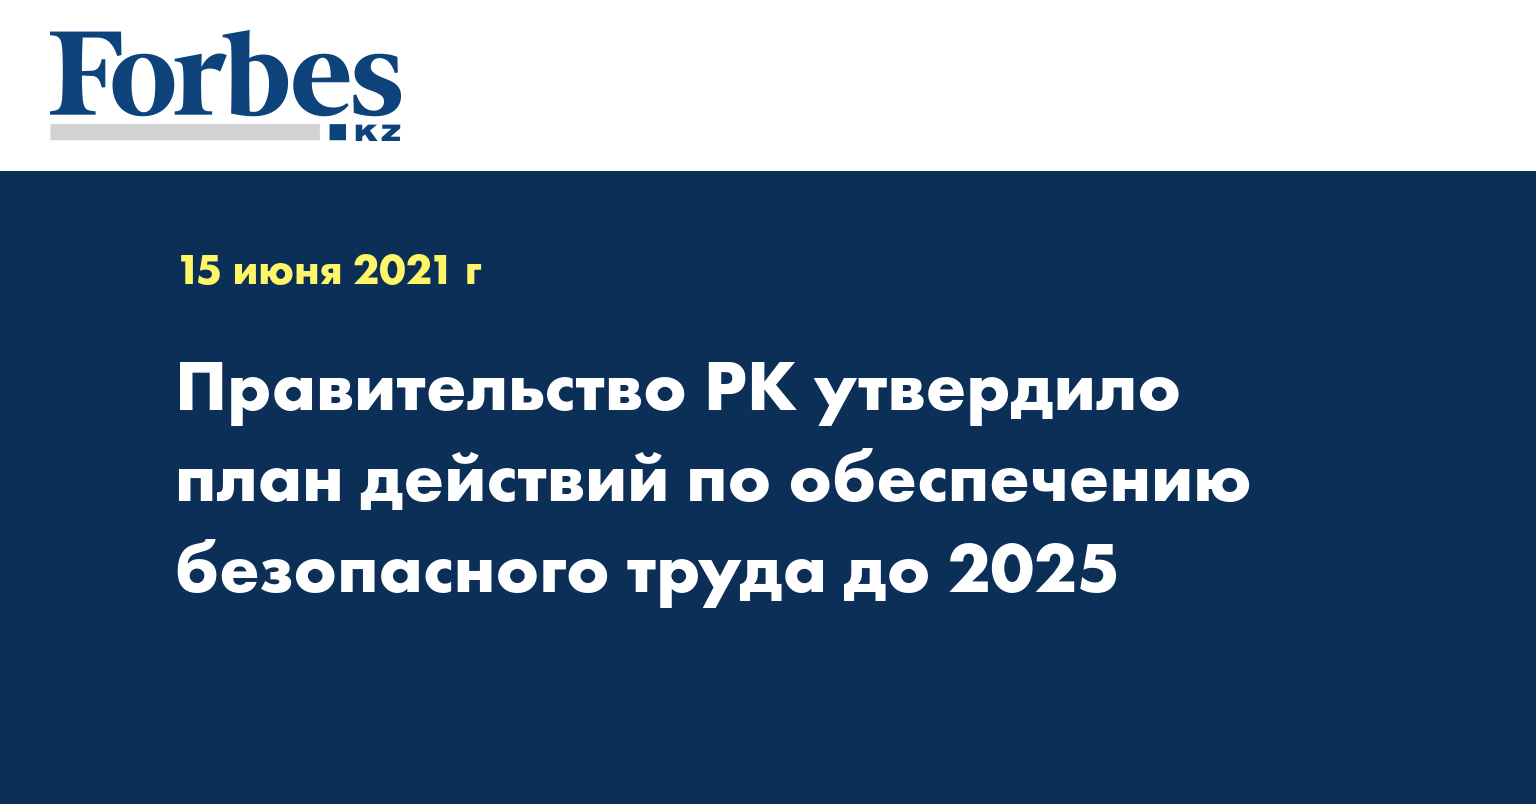 Мрот в 2025 году в россии какой